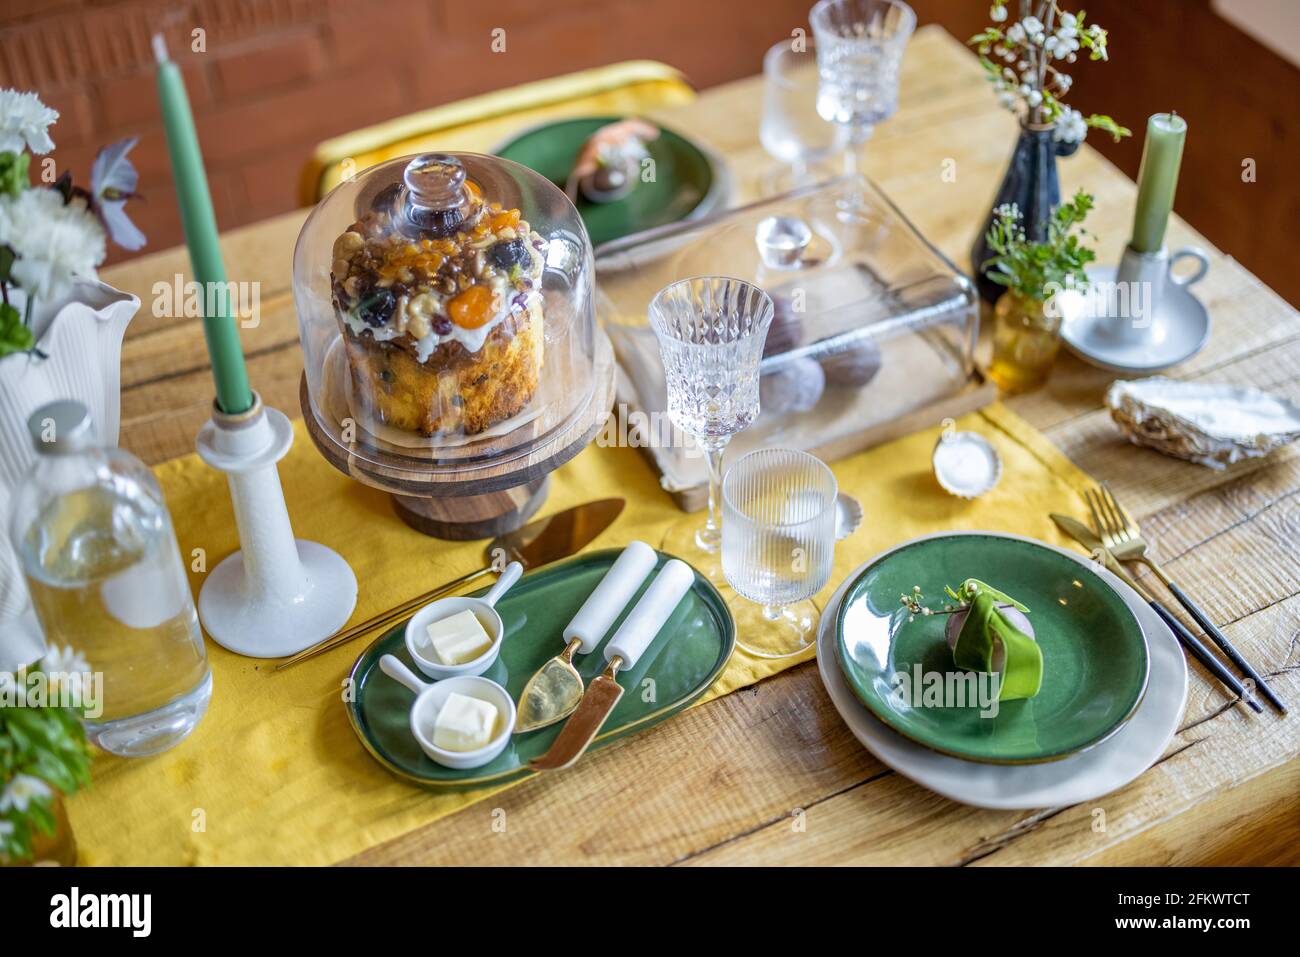 Concept joyeuses Pâques. Beaux réglages de table de printemps, assiette  verte avec oeuf, panettone sur le support à gâteau, bougies vertes, et  branche de fleurs de pomme dans le vase. Nappe de